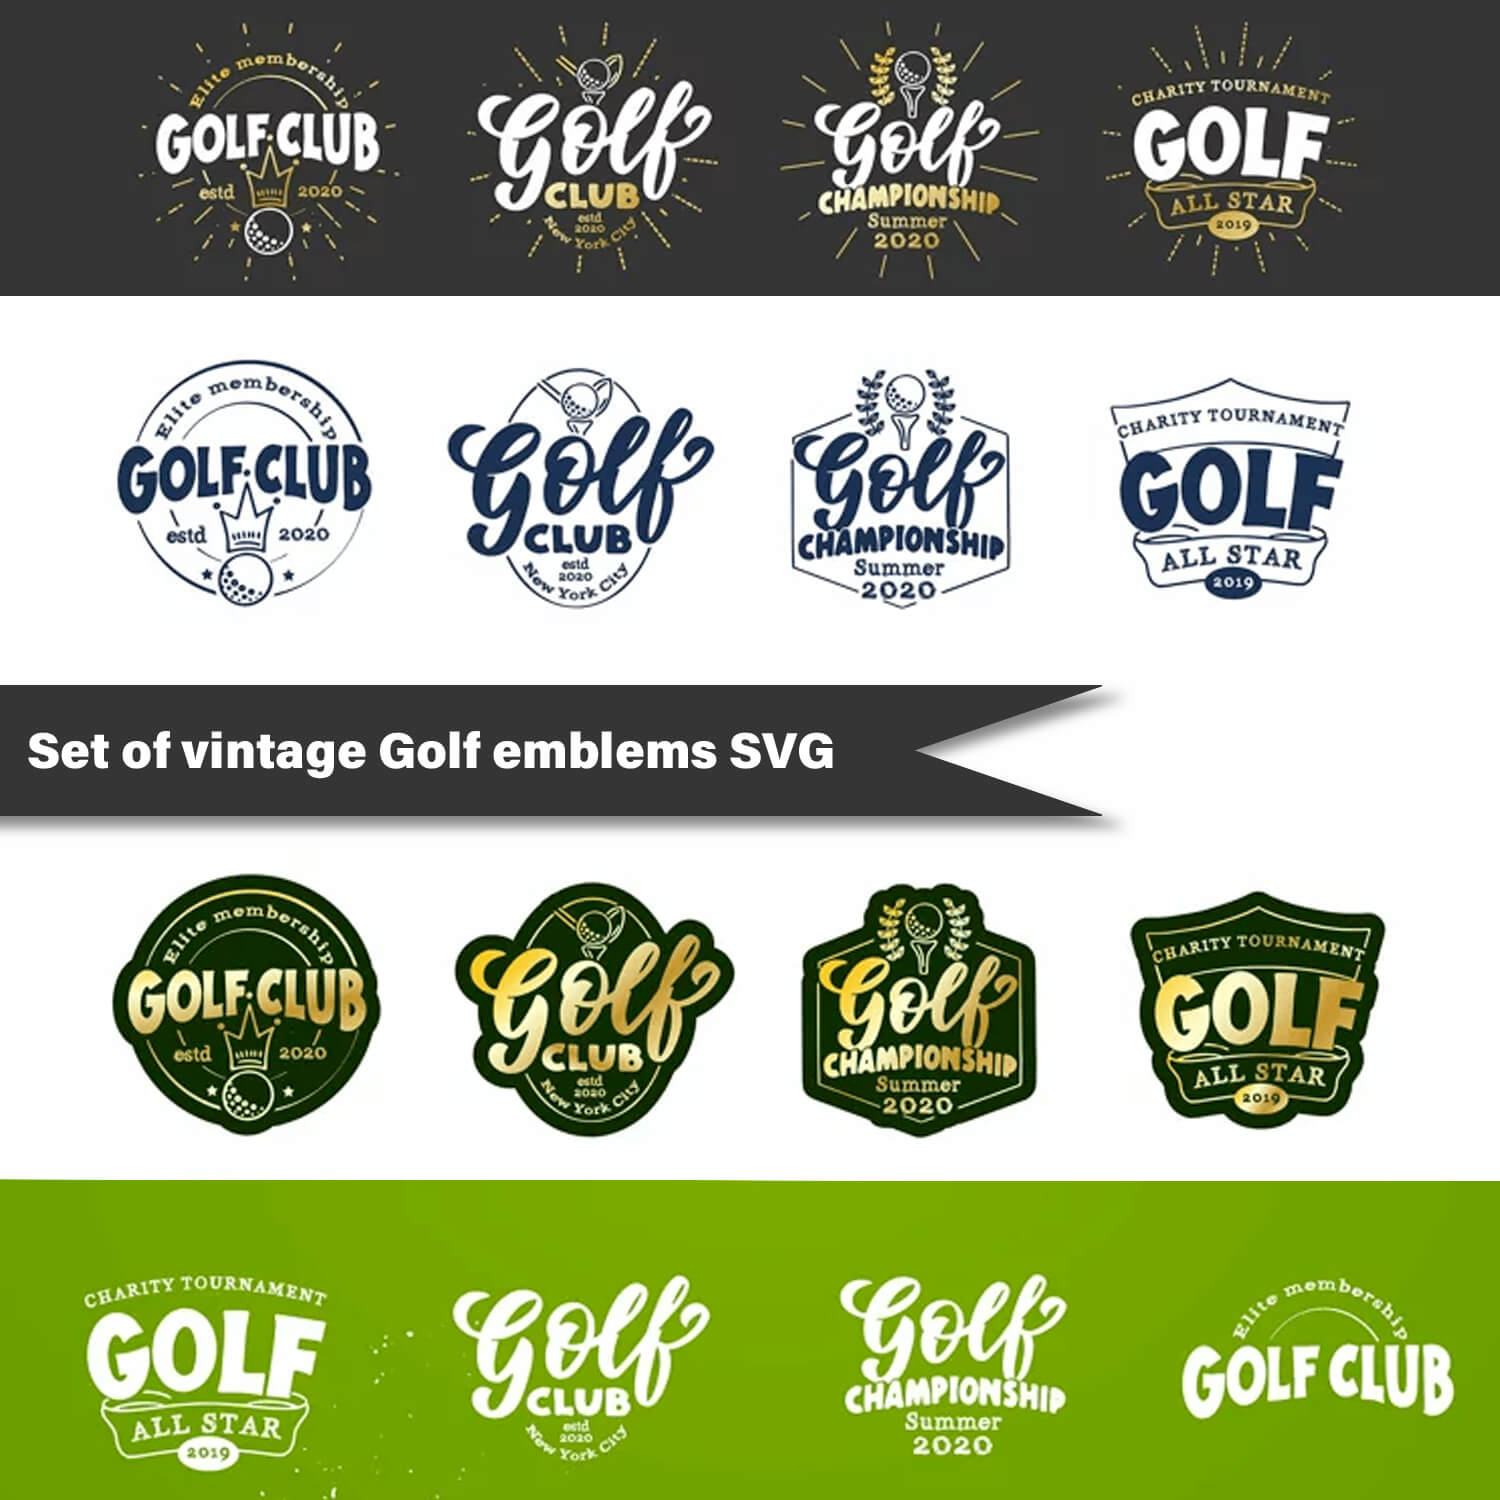 Set of vintage golf emblems SVG.